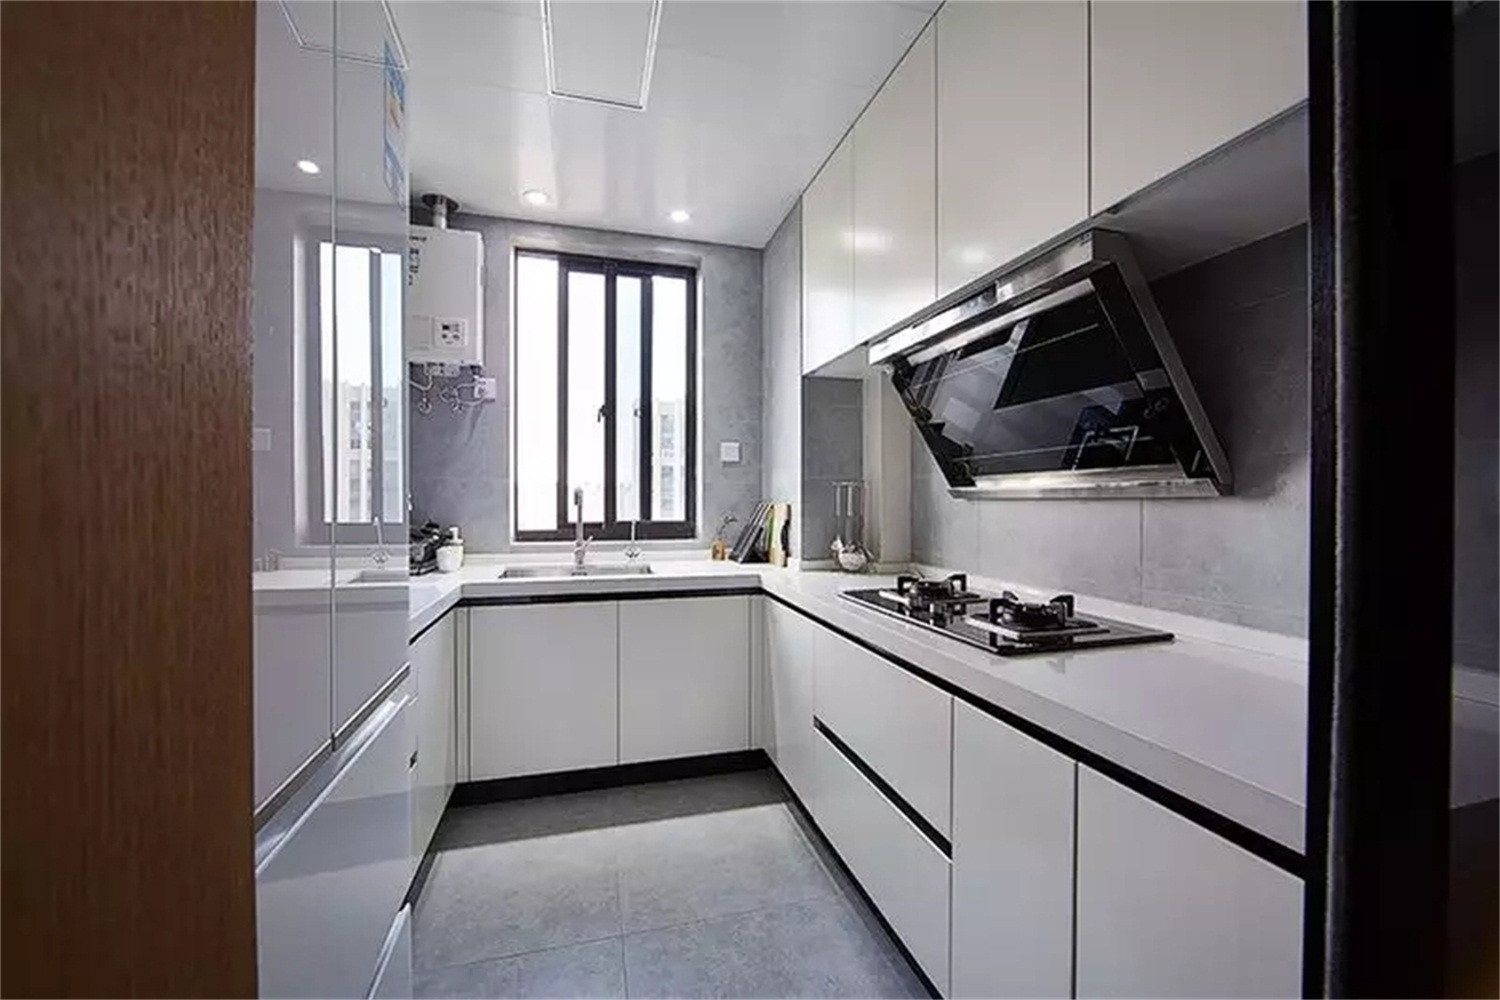 白色橱柜让厨房看起来明亮宽敞,浅灰色的地砖和墙砖